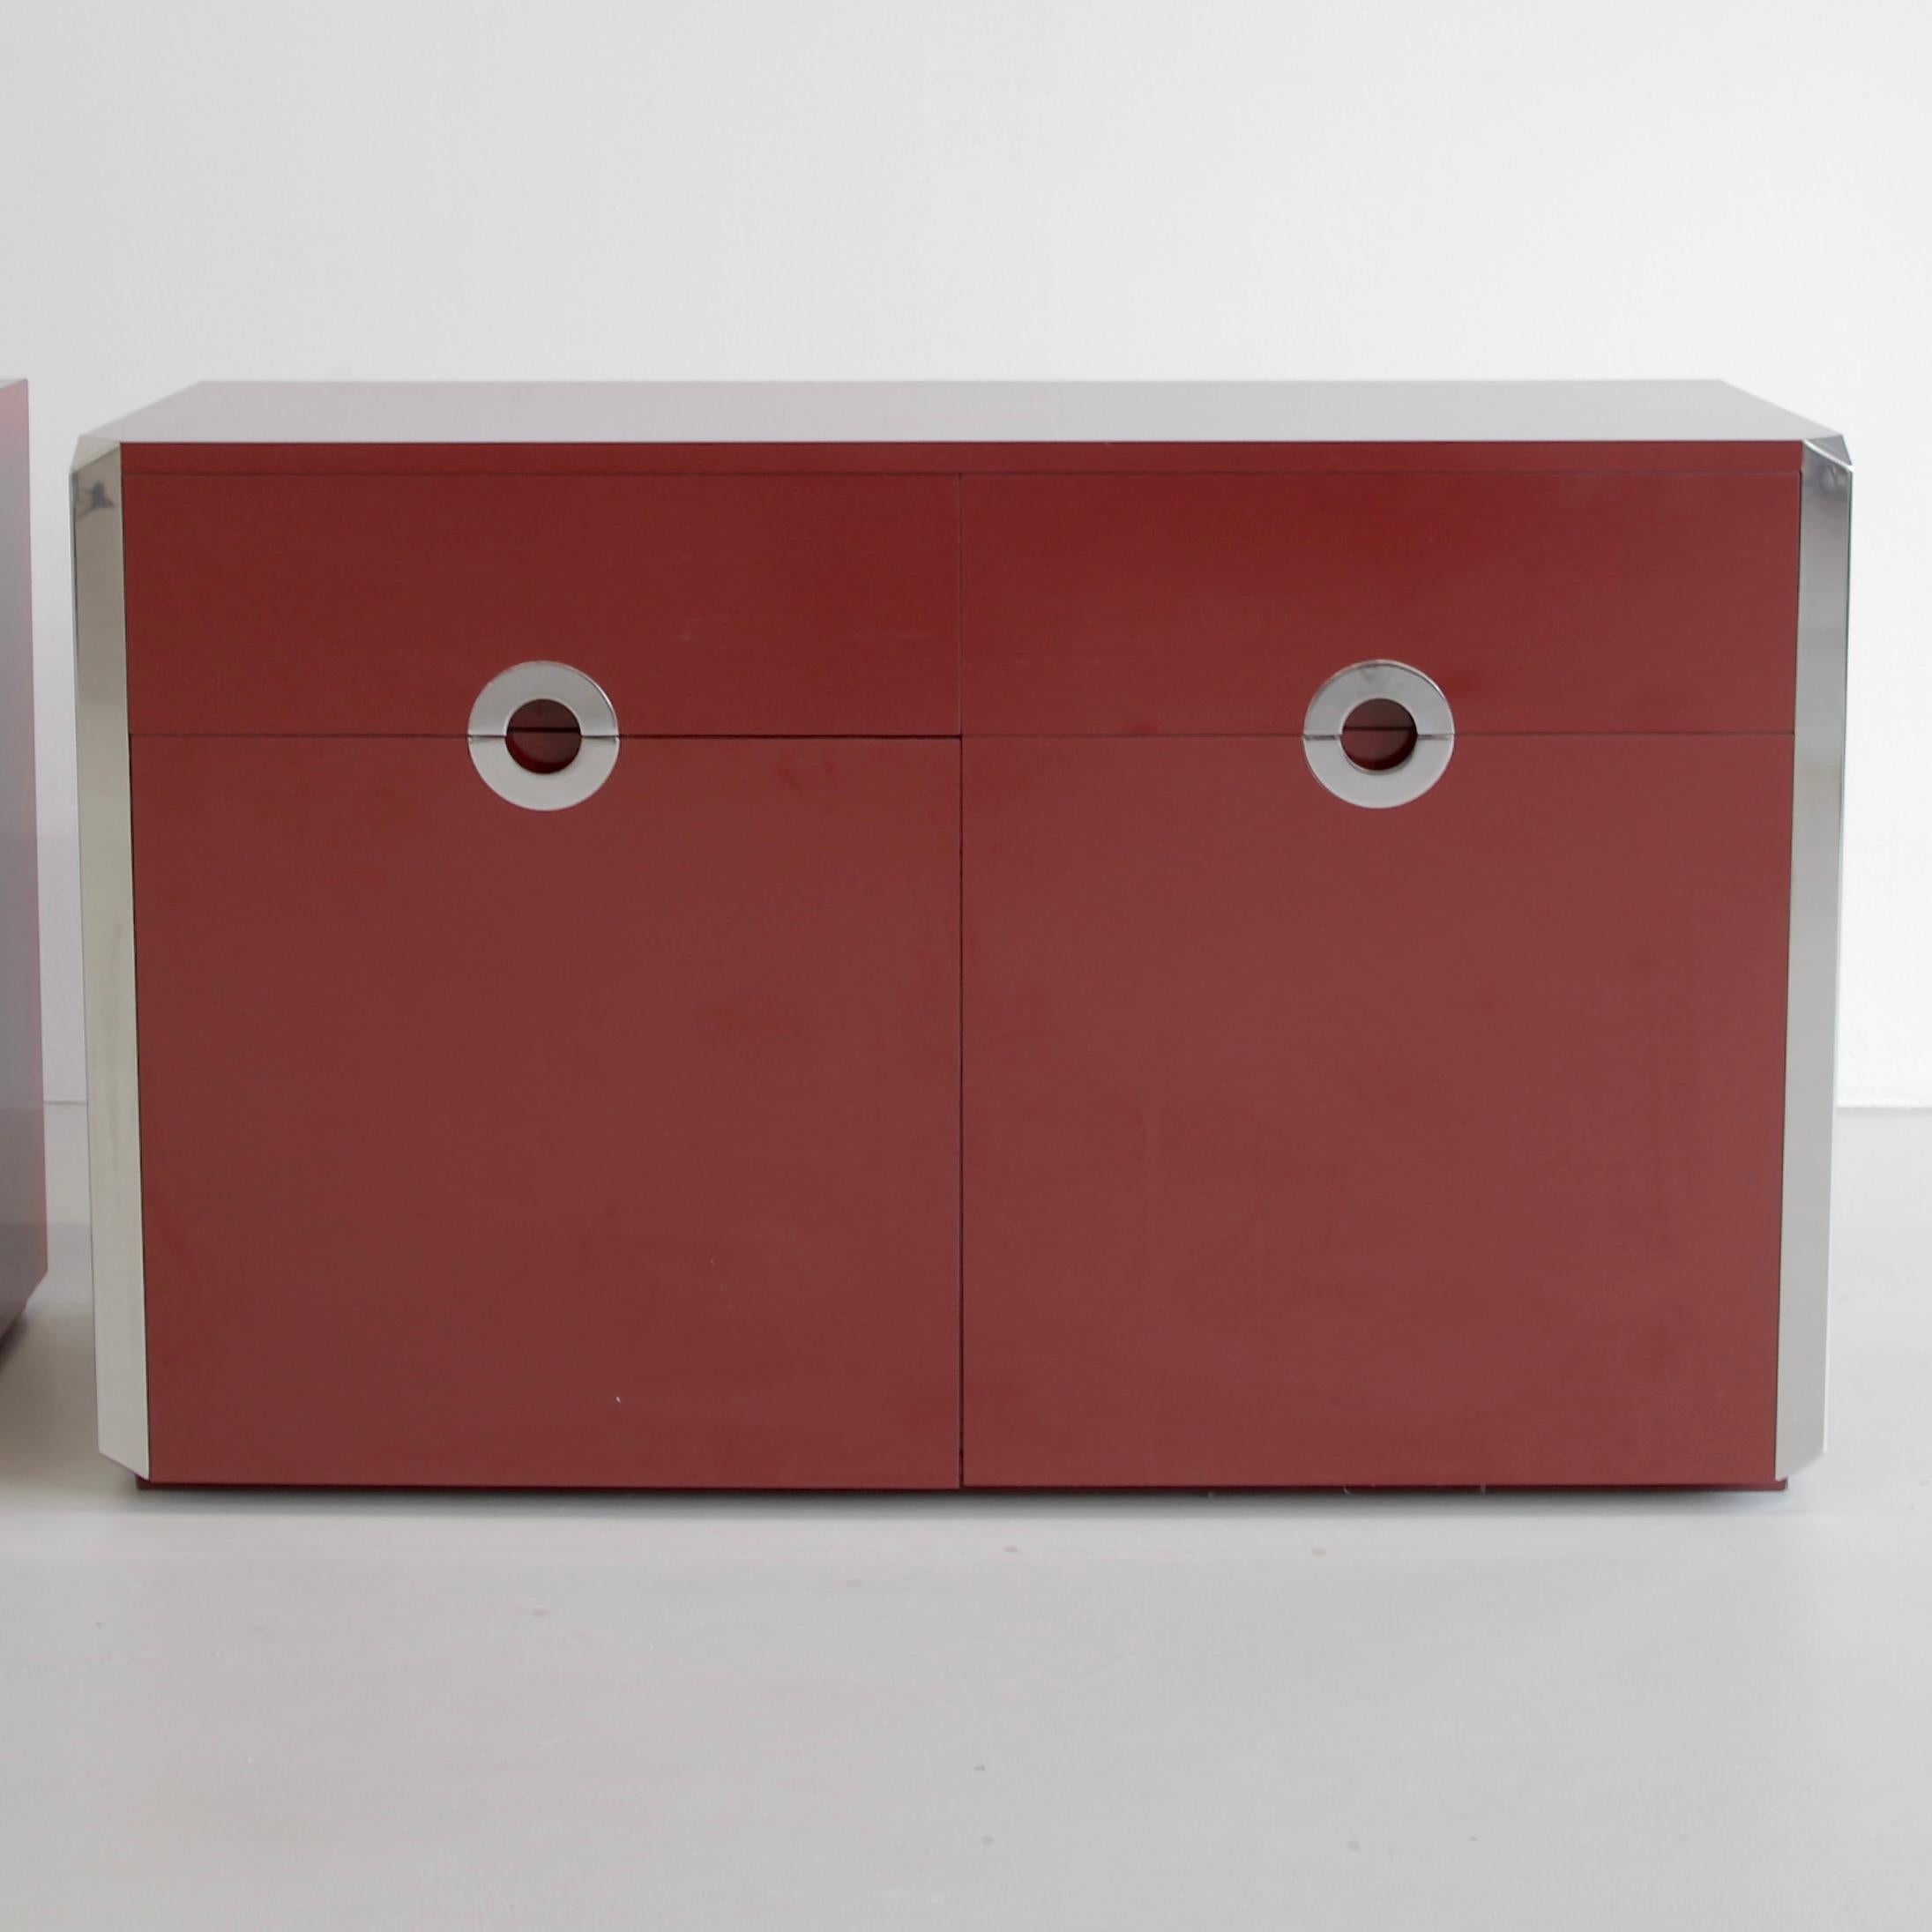 Zweitüriges Sideboard, entworfen von Willy Rizzo. Italien, Maria Sabot, 1972.

Dunkelrotes Laminat und verchromtes Sideboard, entworfen von Willy Rizzo und hergestellt von Mario Sabot. Zwei Türen und zwei Schubladen, einschließlich eines eingebauten